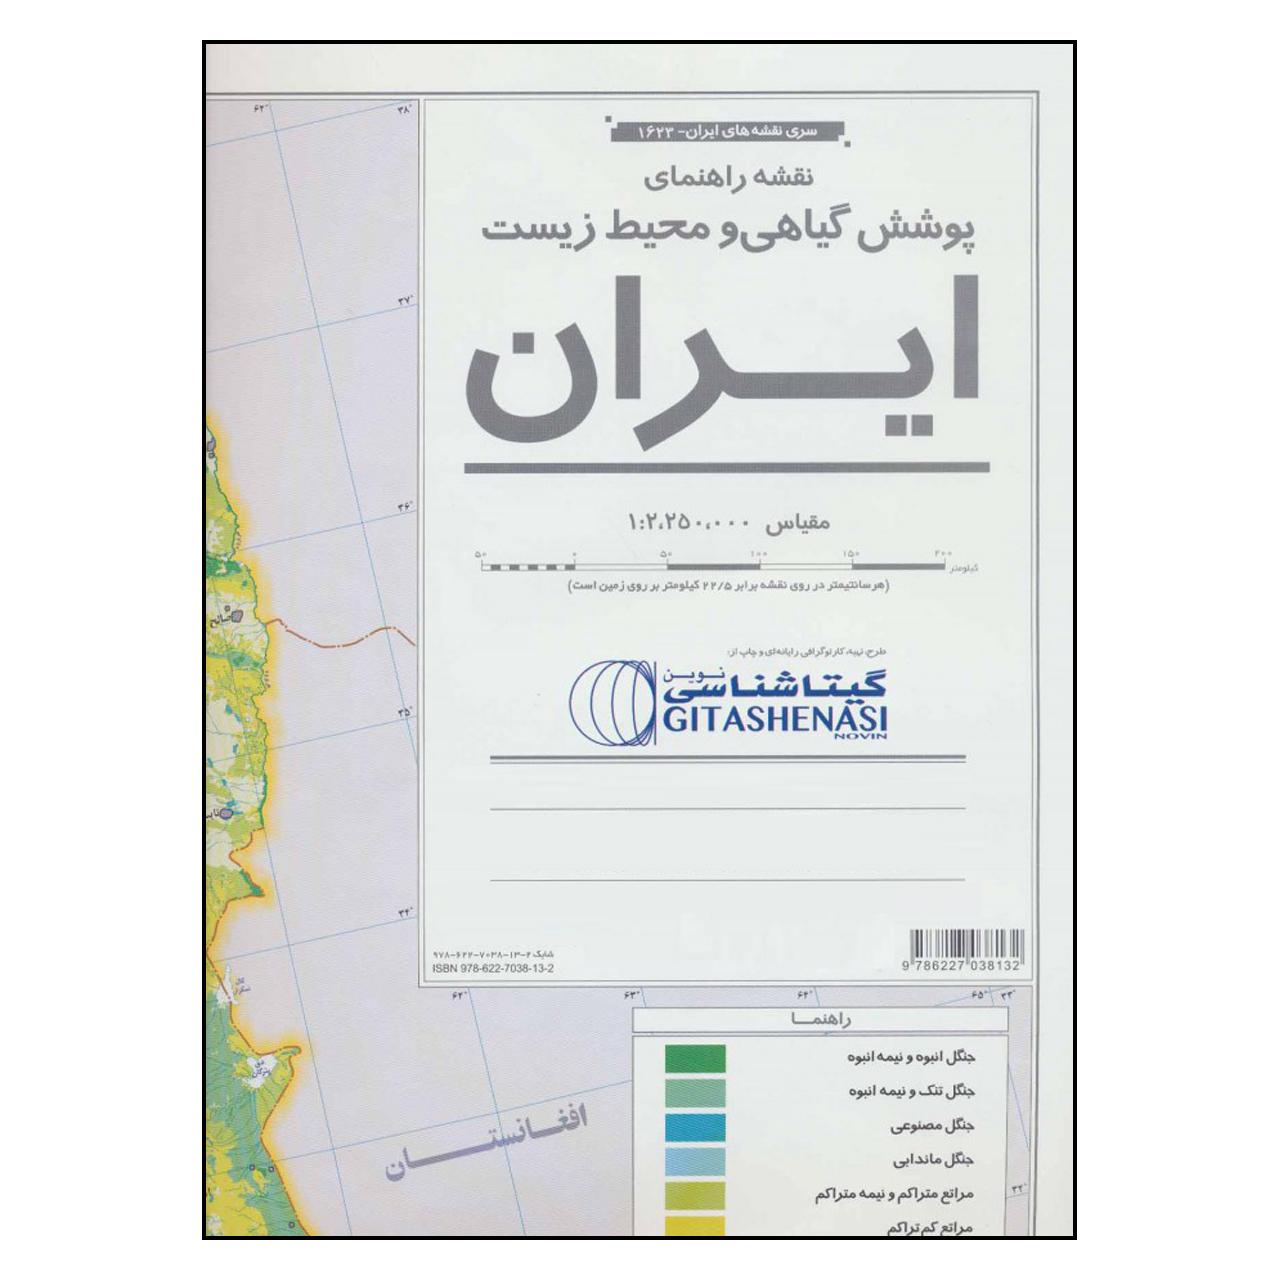 نقشه راهنمای پوشش گیاهی و محیط زیست ایران گیتا شناسی کد 1623